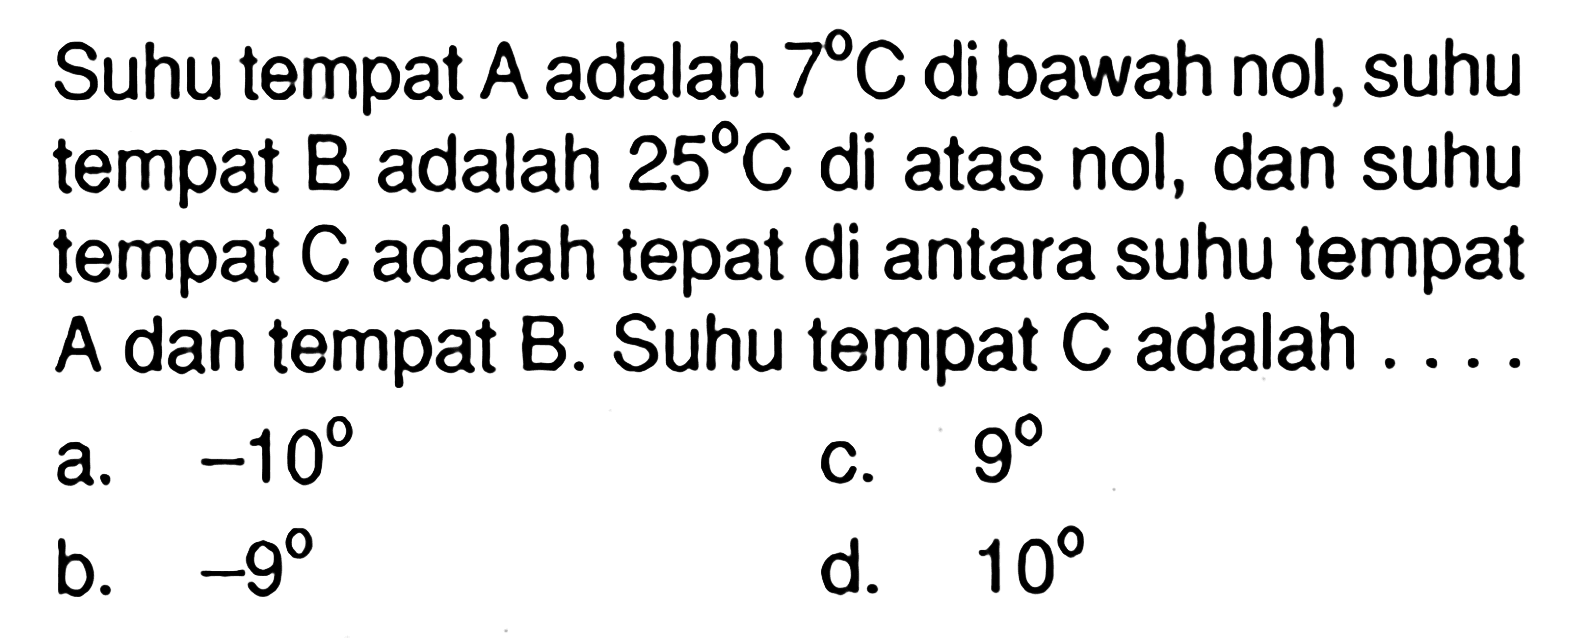 Suhu tempat A adalah 7C di bawah nol, suhu tempat B adalah 25C di atas nol, dan suhu tempat C adalah tepat di antara suhu tempat A dan tempat B. Suhu tempat C adalah... a. -10 b. -9 c. 9 d. 10